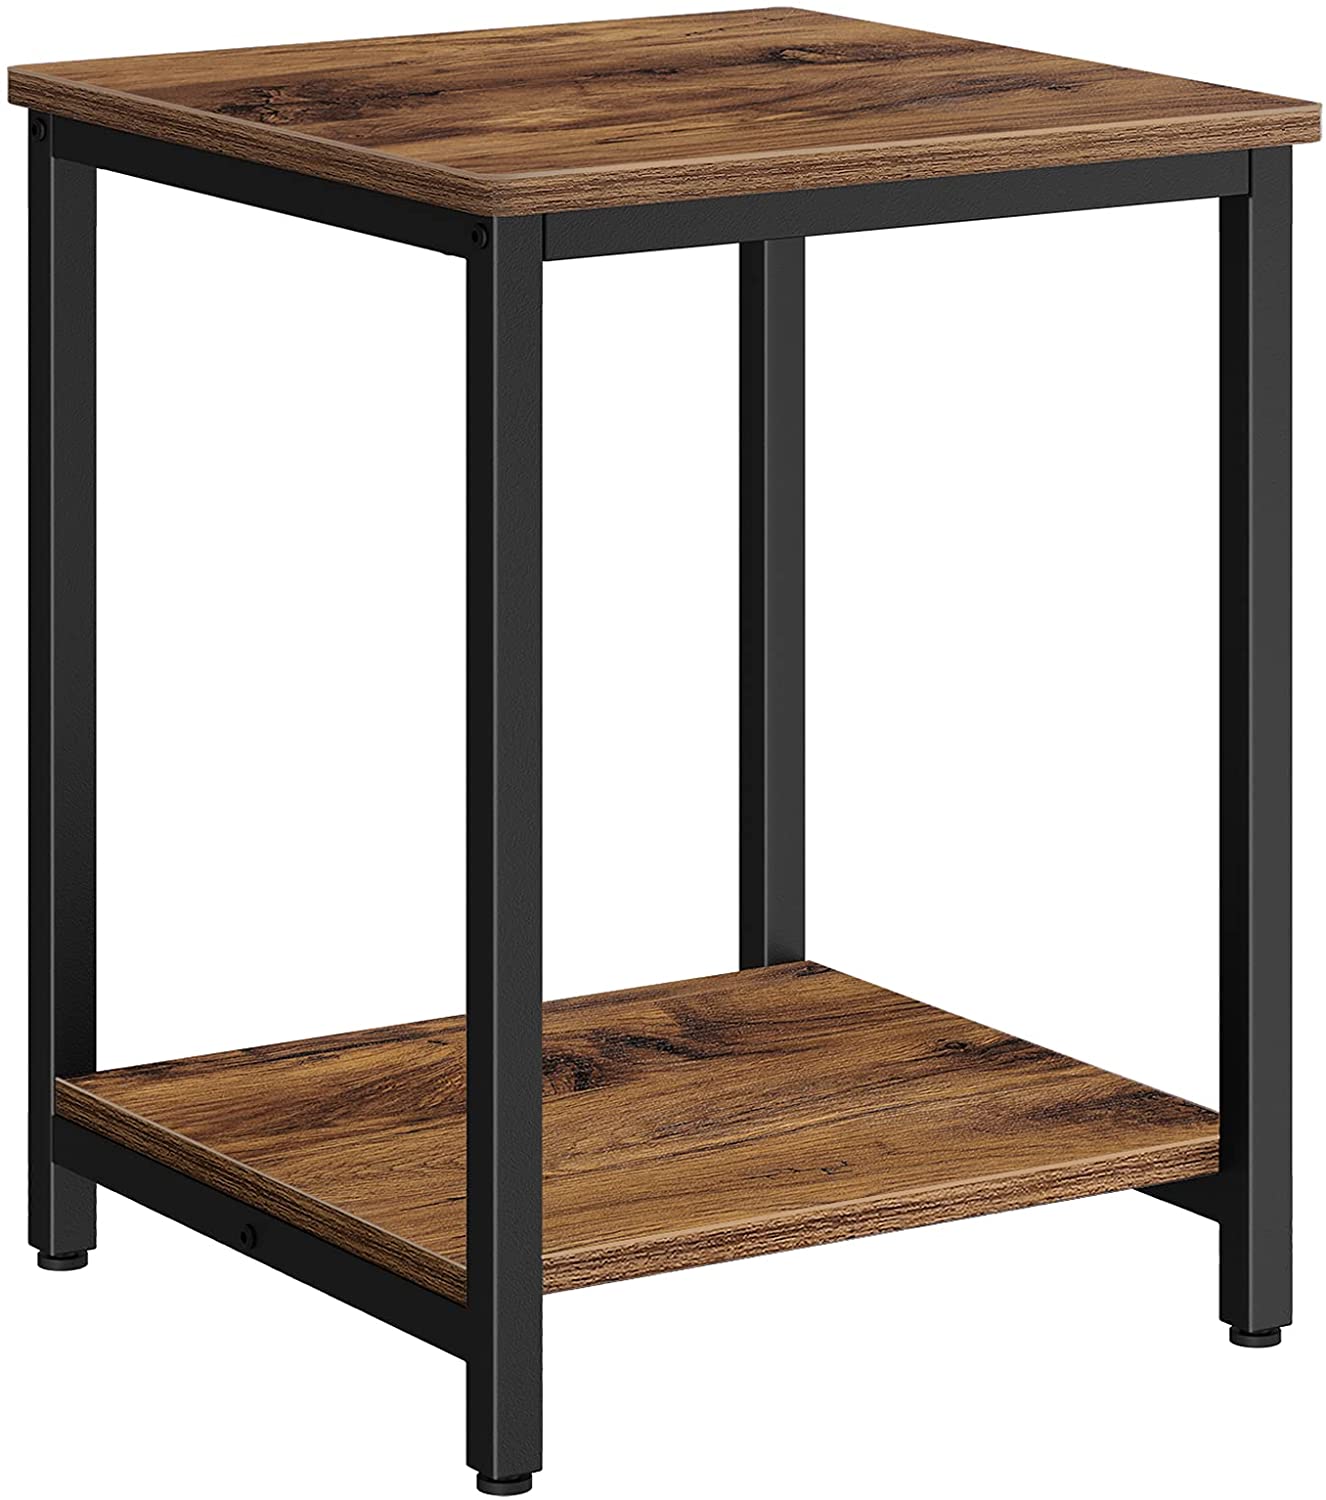 American Style Industrial Knock Down Furniture Vintage Metal Wood Nightstand Bedside Tables